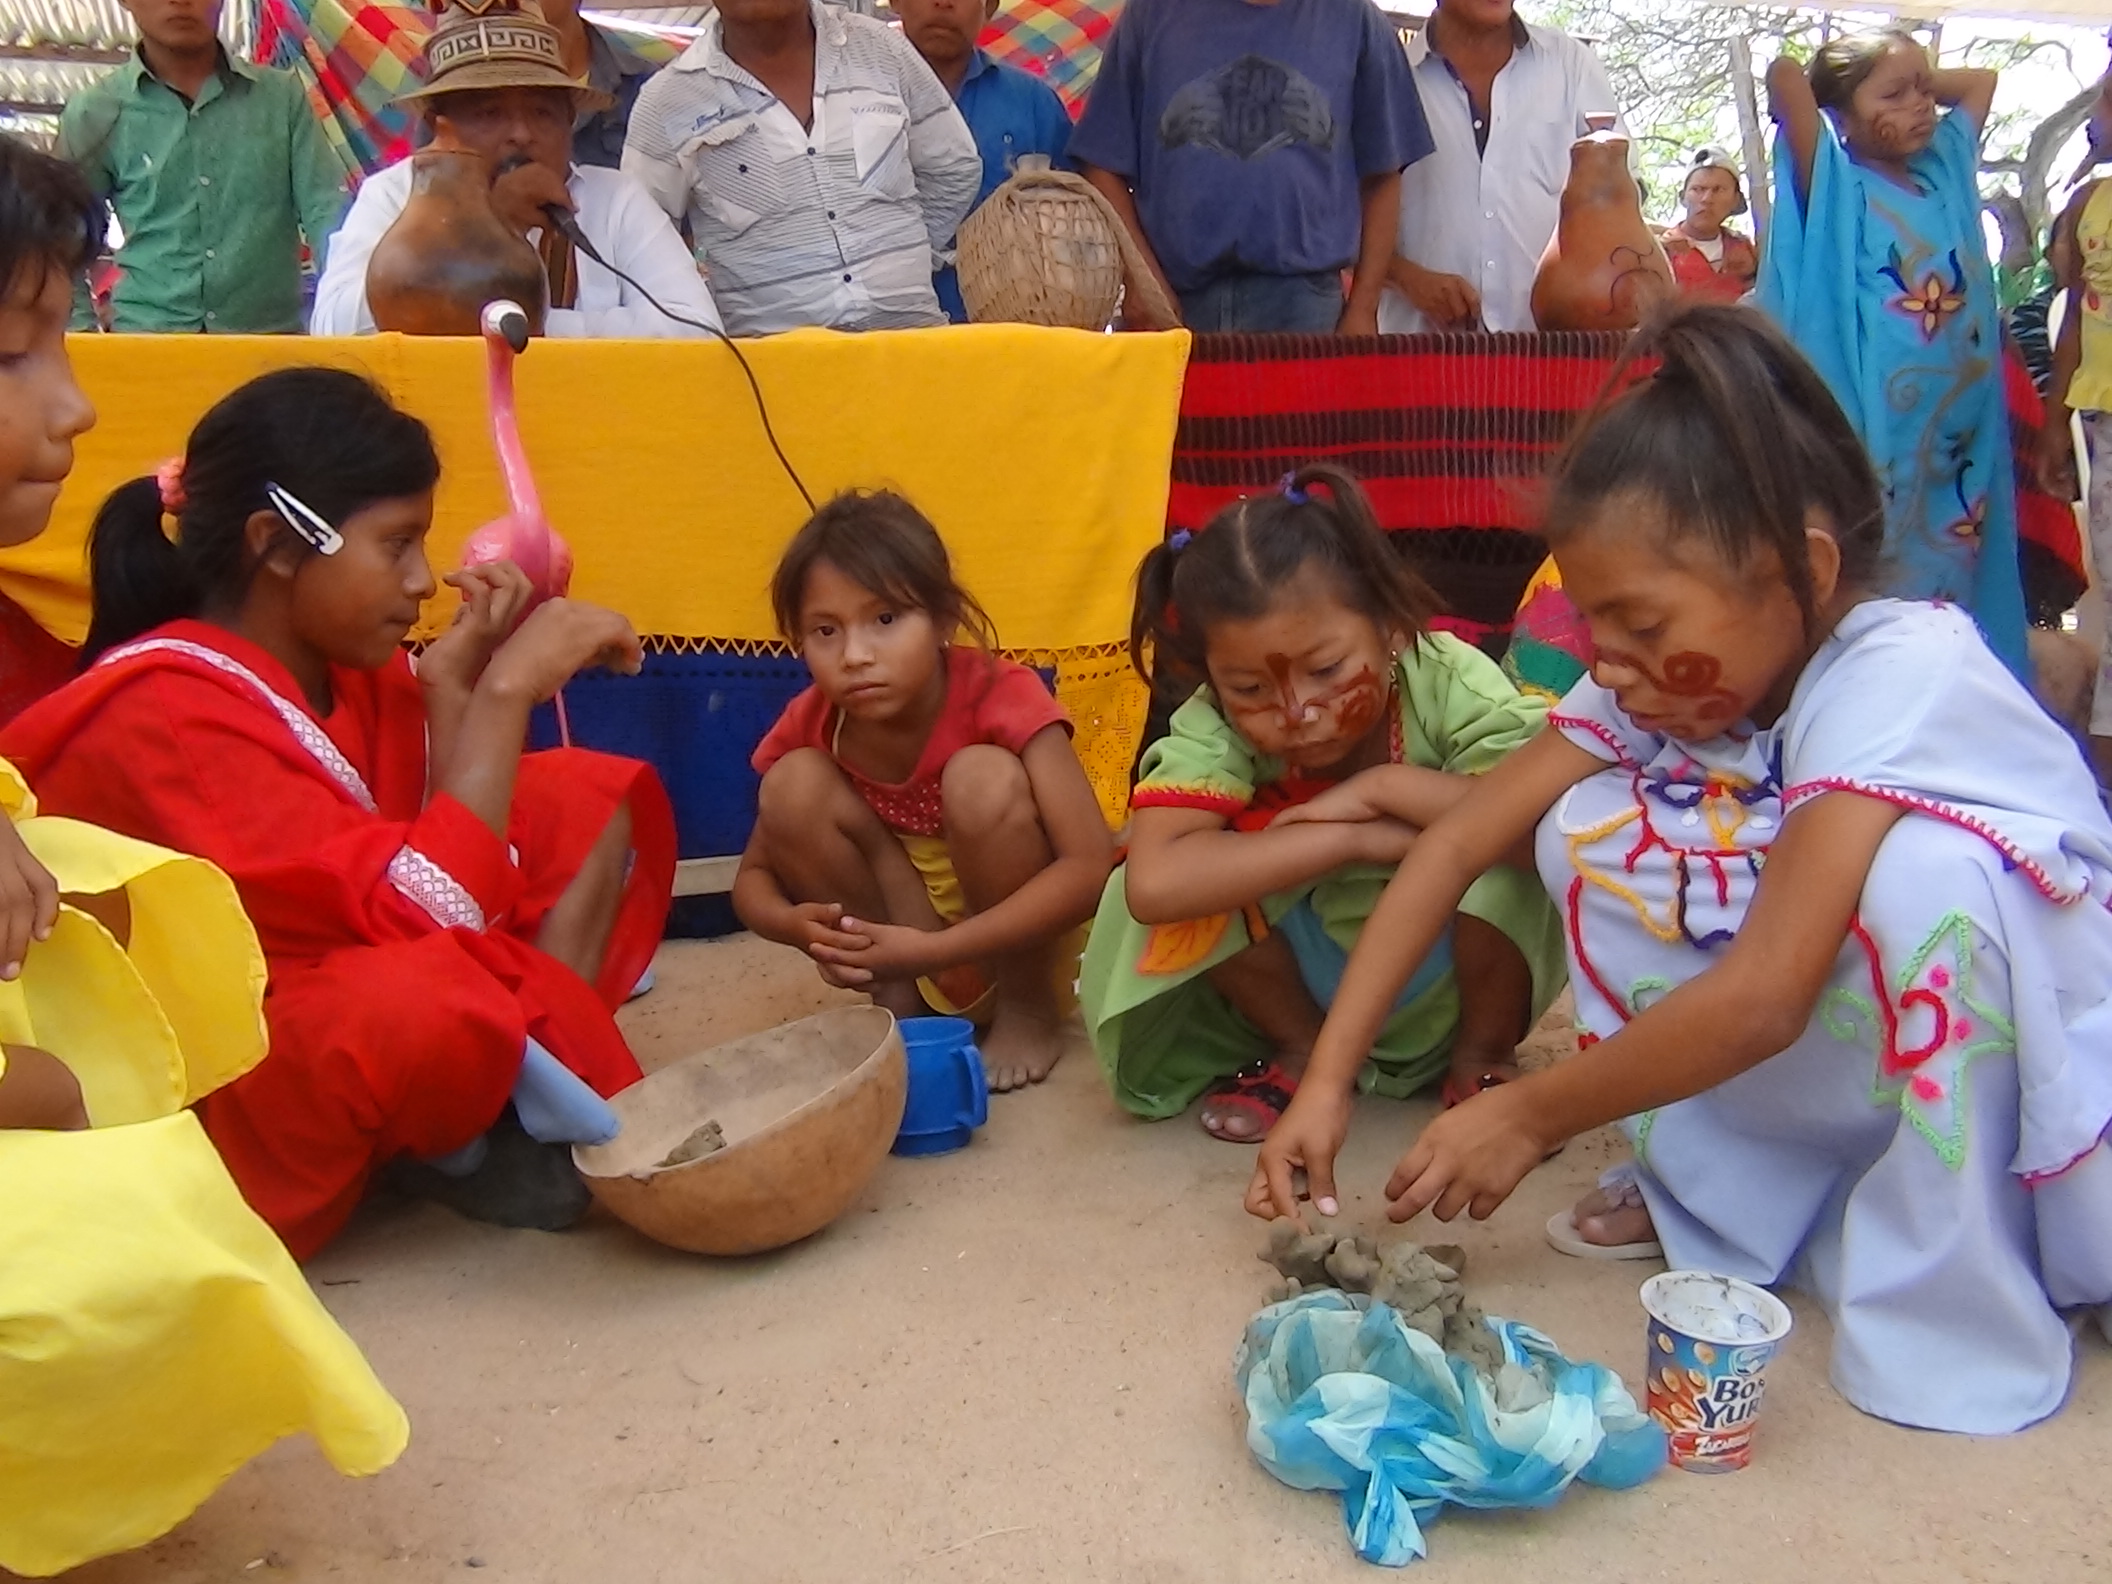 Concurso de wayuunkerra o muñeca de barro entre las niñas de las comunidades presentes en el encuentro.